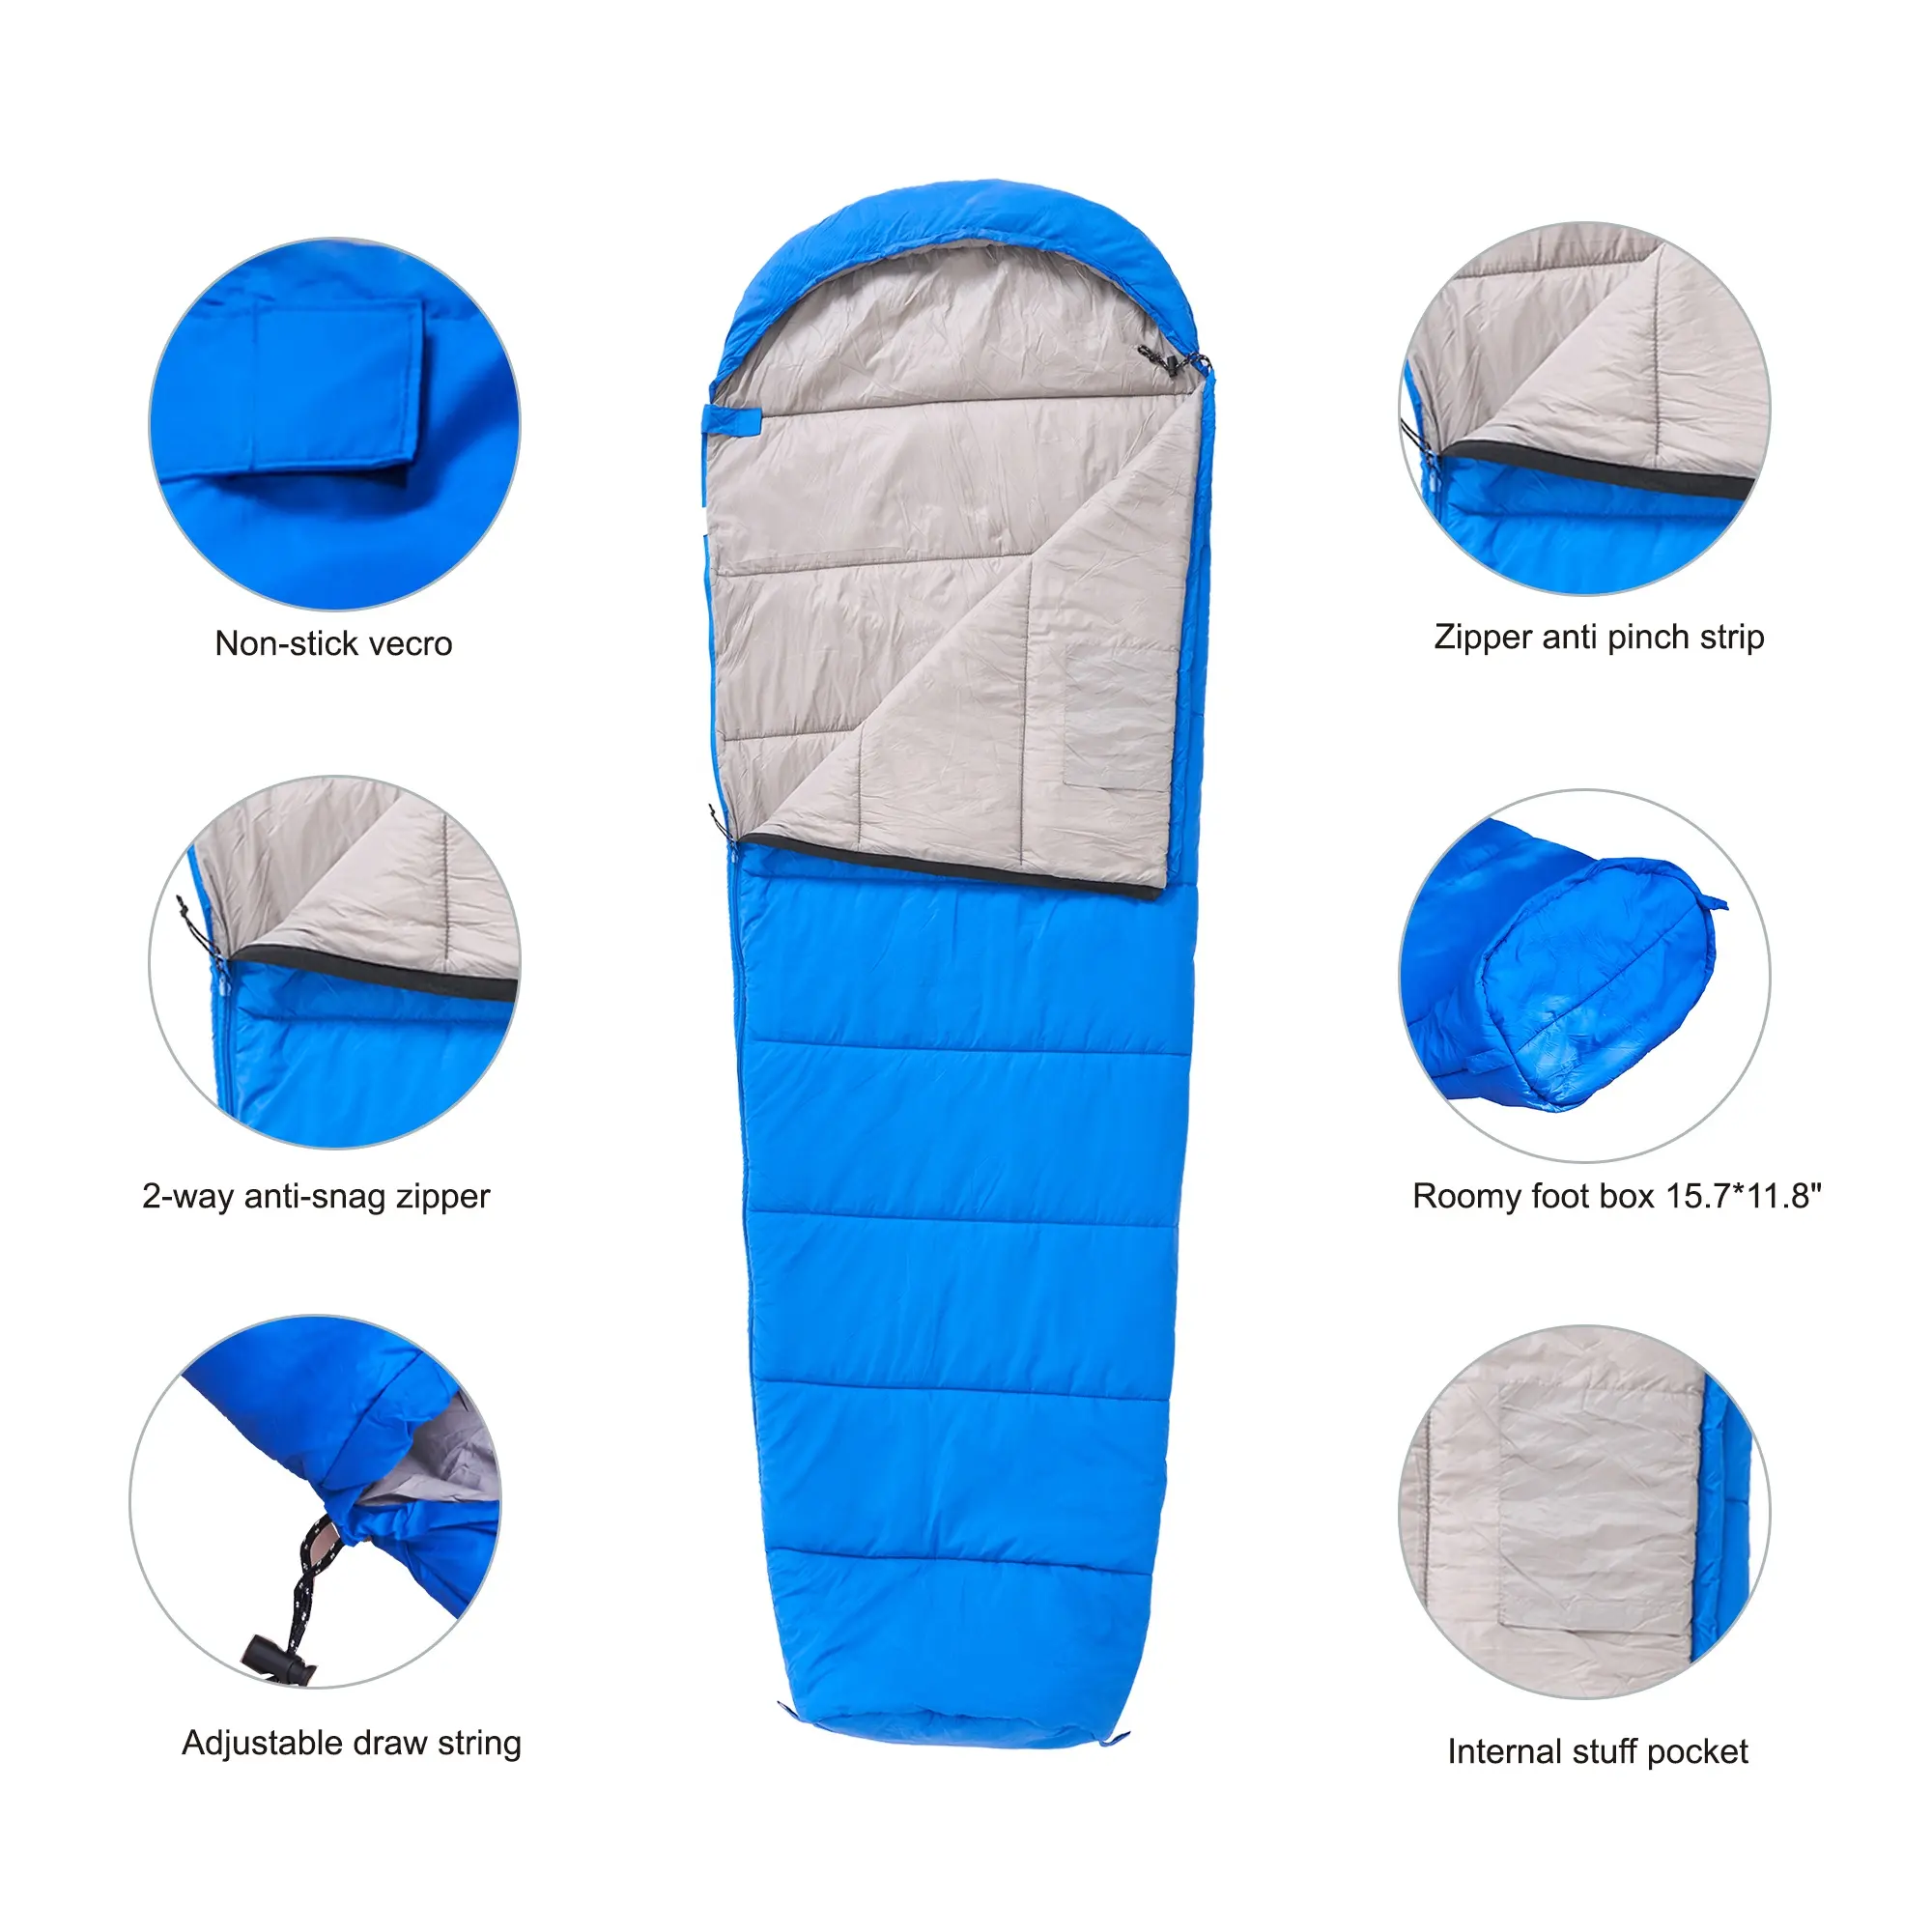 Yetişkin kış sıcak uyku tulumu Packable için ODM mumya uyku tulumu Survival uyku tulumu